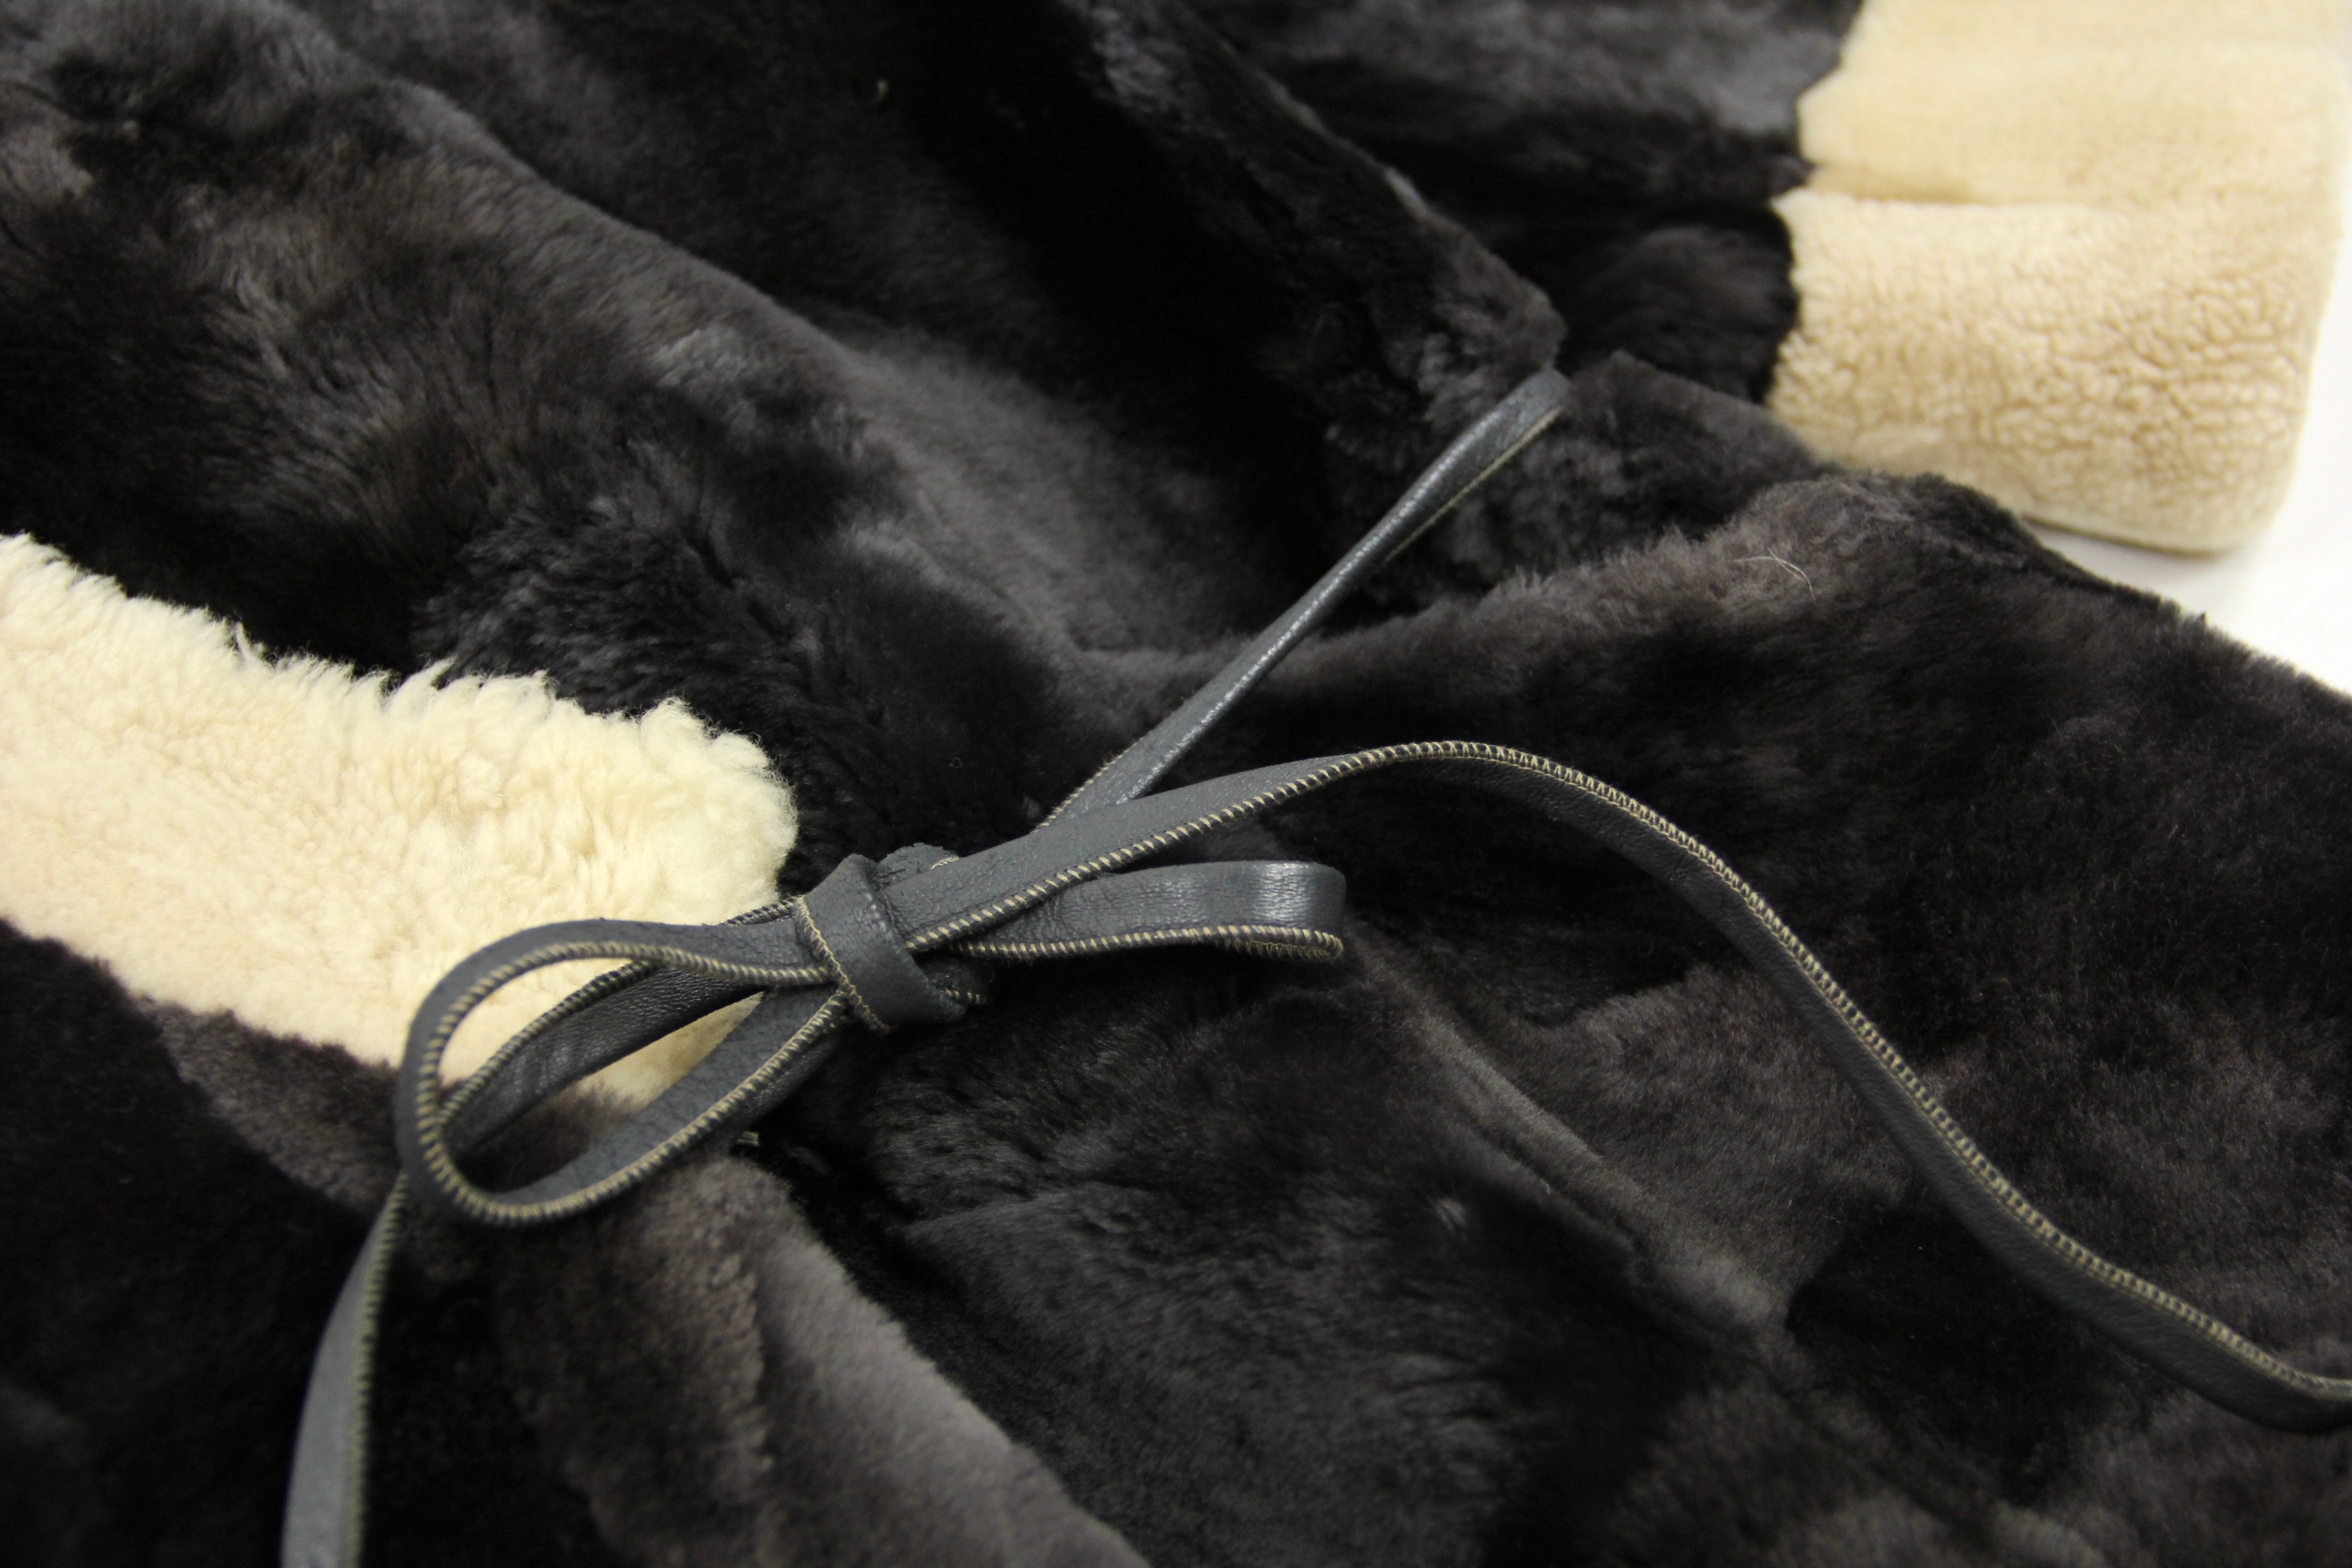 Plush Mouton Shearling Patchwork Kimono Coat, Size L